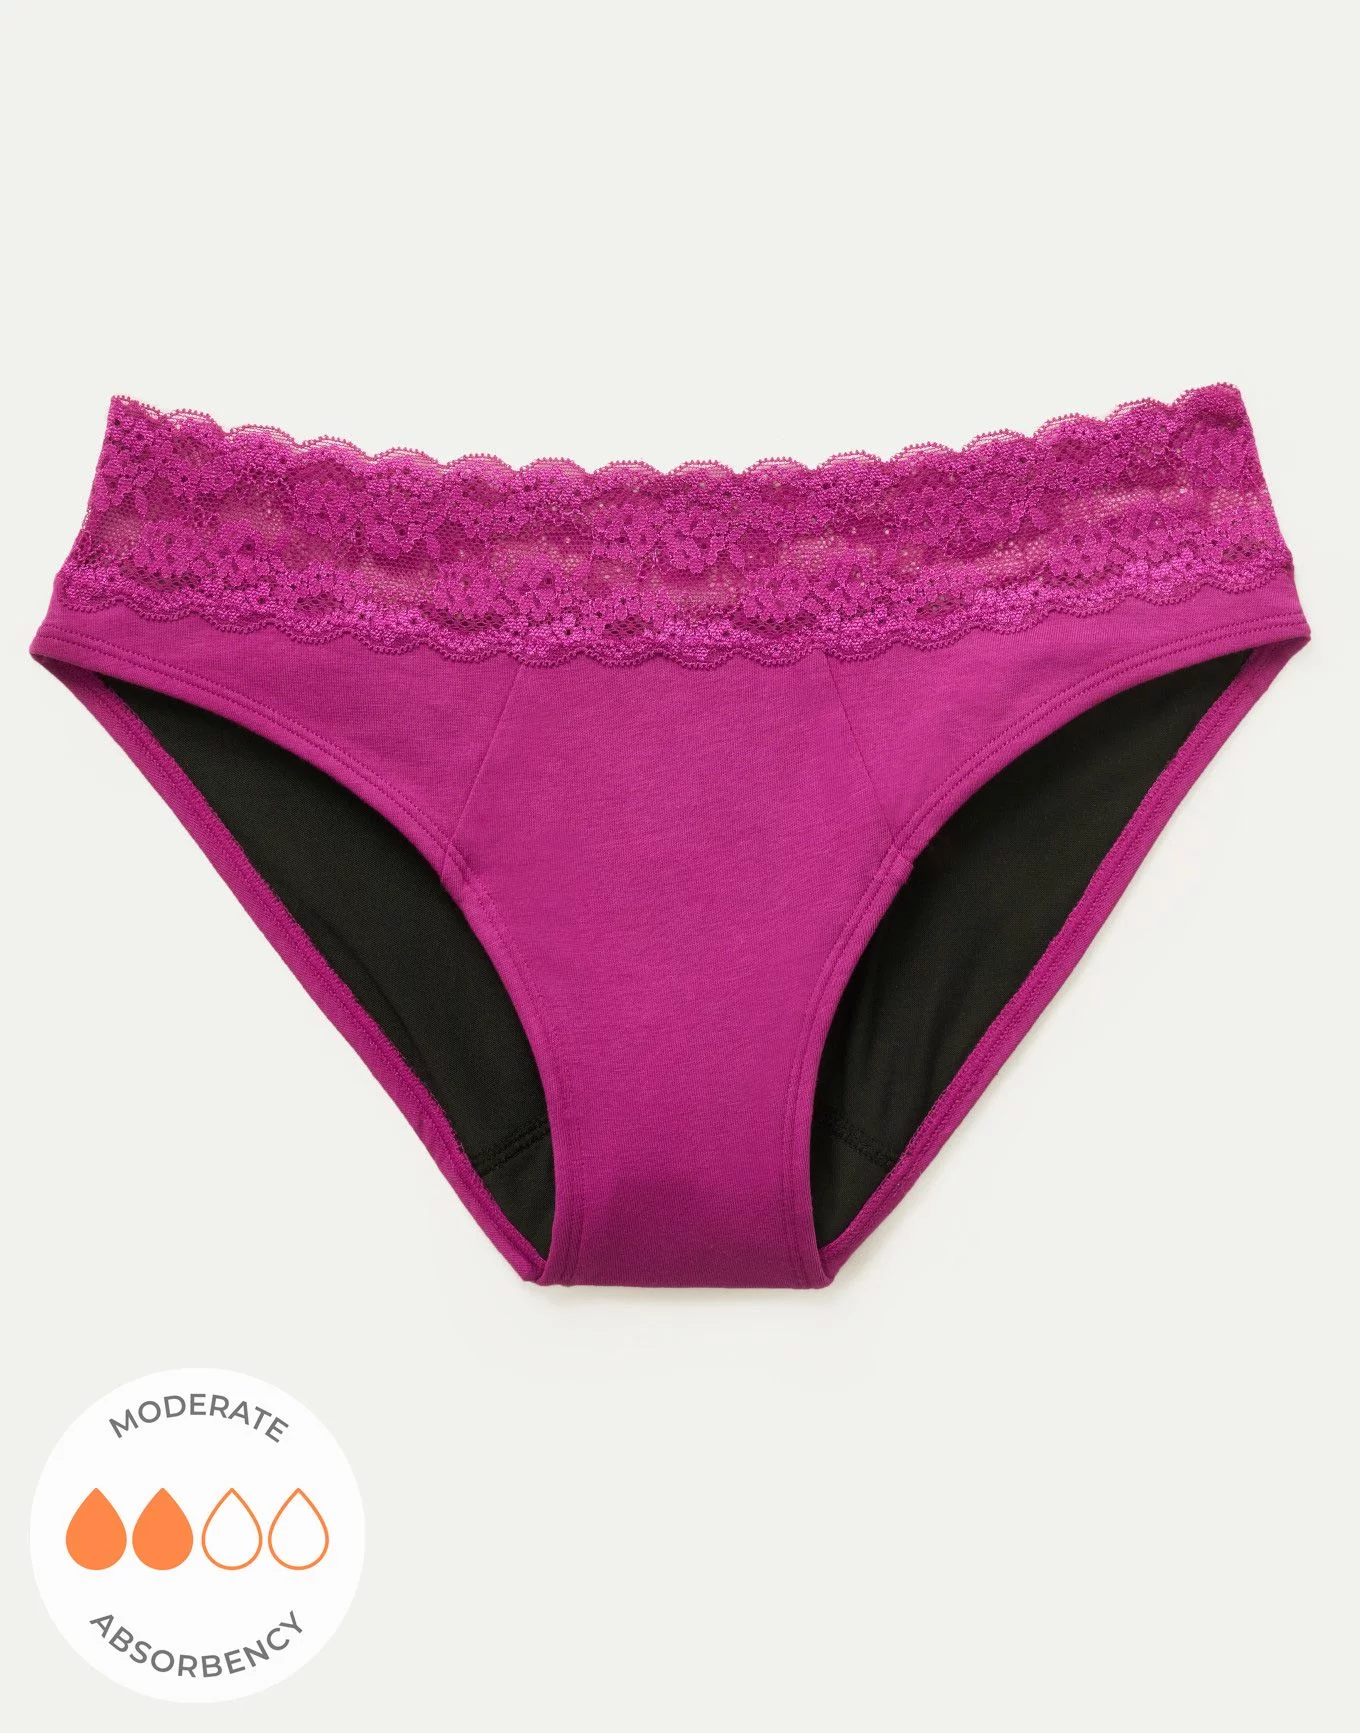 Buy Bikini Period Underwear - Order Panties online 1121416500 - PINK US